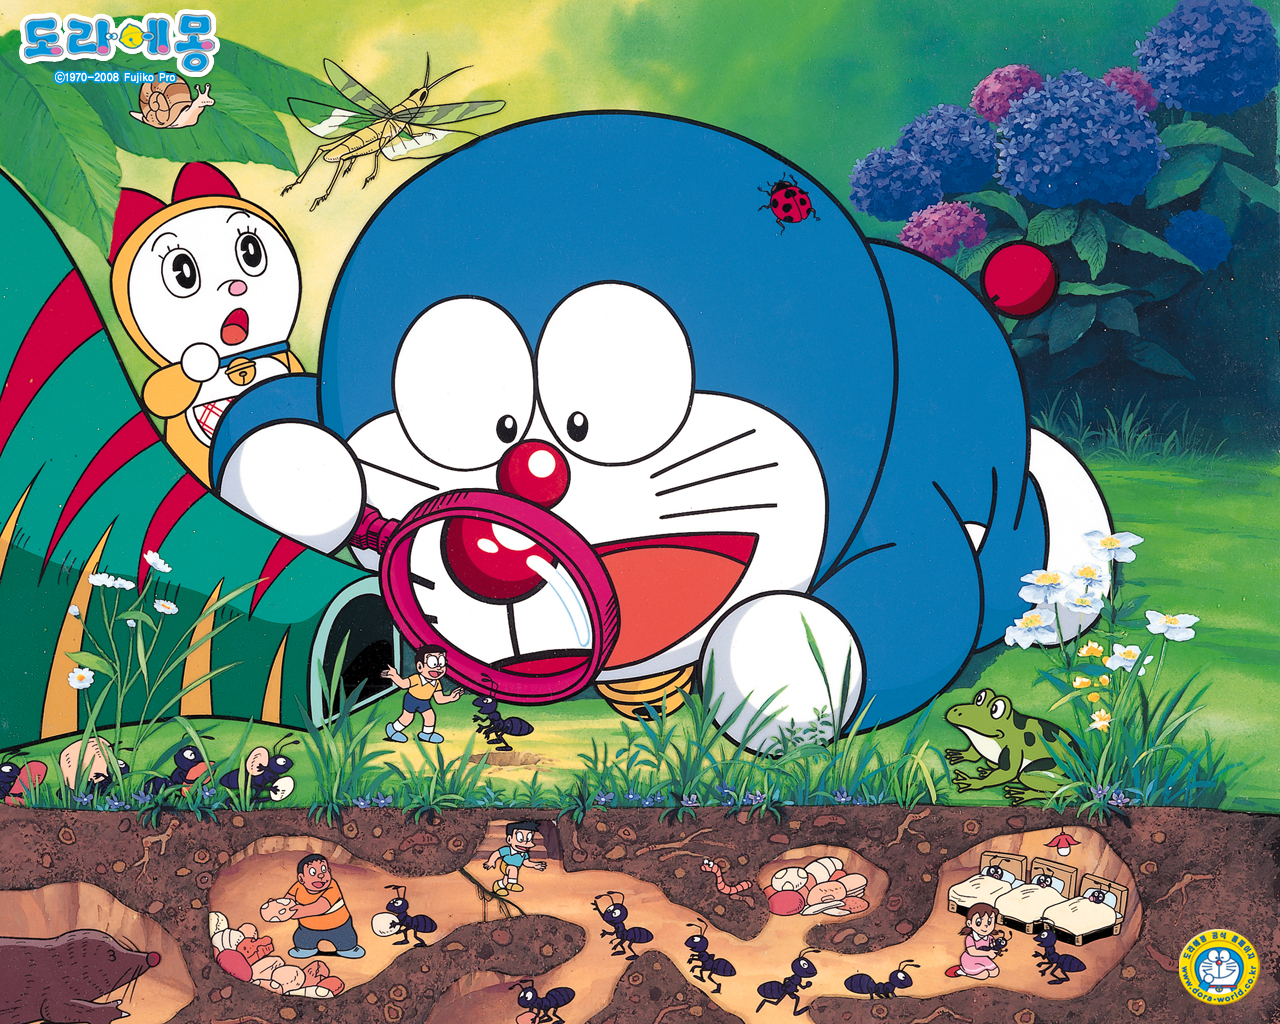 Hình ảnh Doraemon luôn tồn tại như một biểu tượng lớn trong trái tim những fan hâm mộ. Từ phong cách thiết kế đến những hành động và tư thế, tất cả đều làm nên một Doraemon đáng yêu và gần gũi. Hãy xem những hình ảnh liên quan đến anh chàng robot này để được trải nghiệm cảm giác vui tươi và ấm áp.